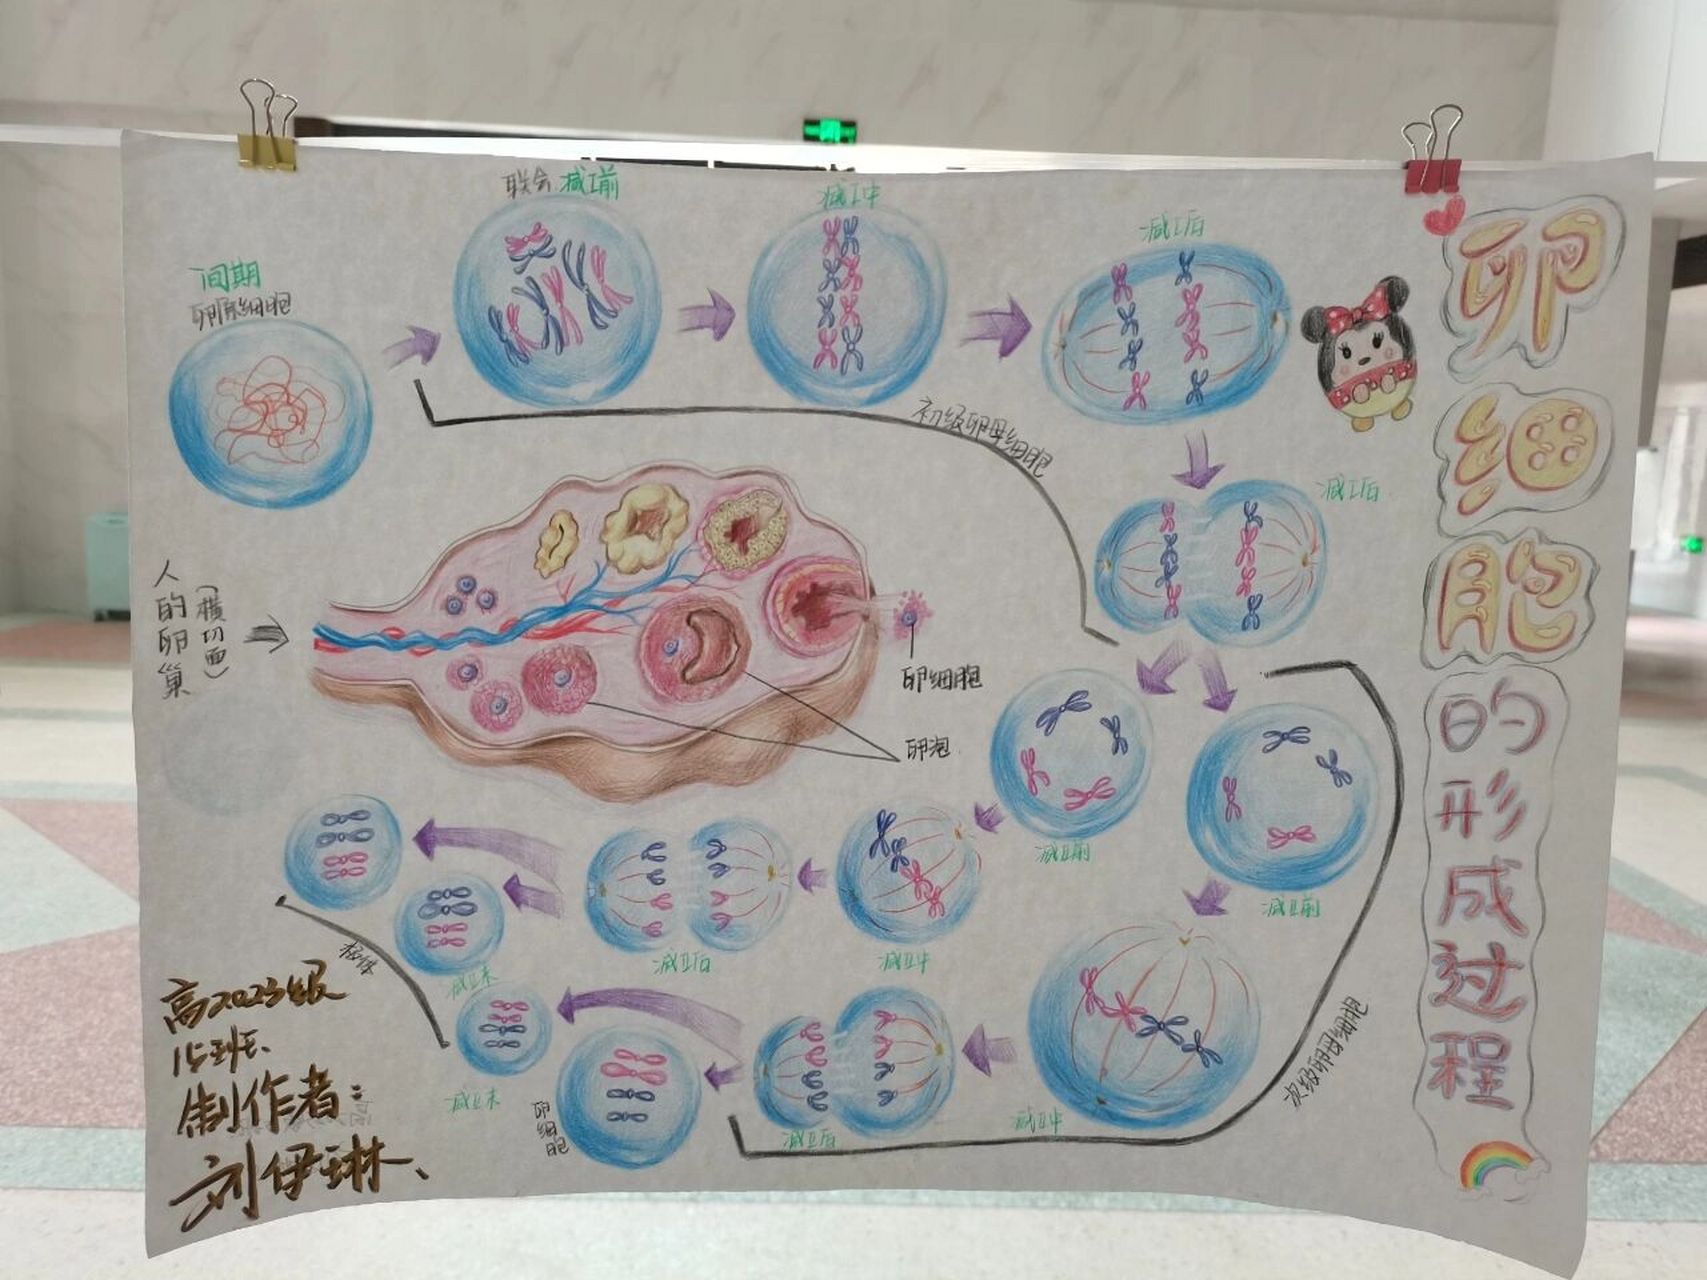 卵母细胞减数的过程图图片